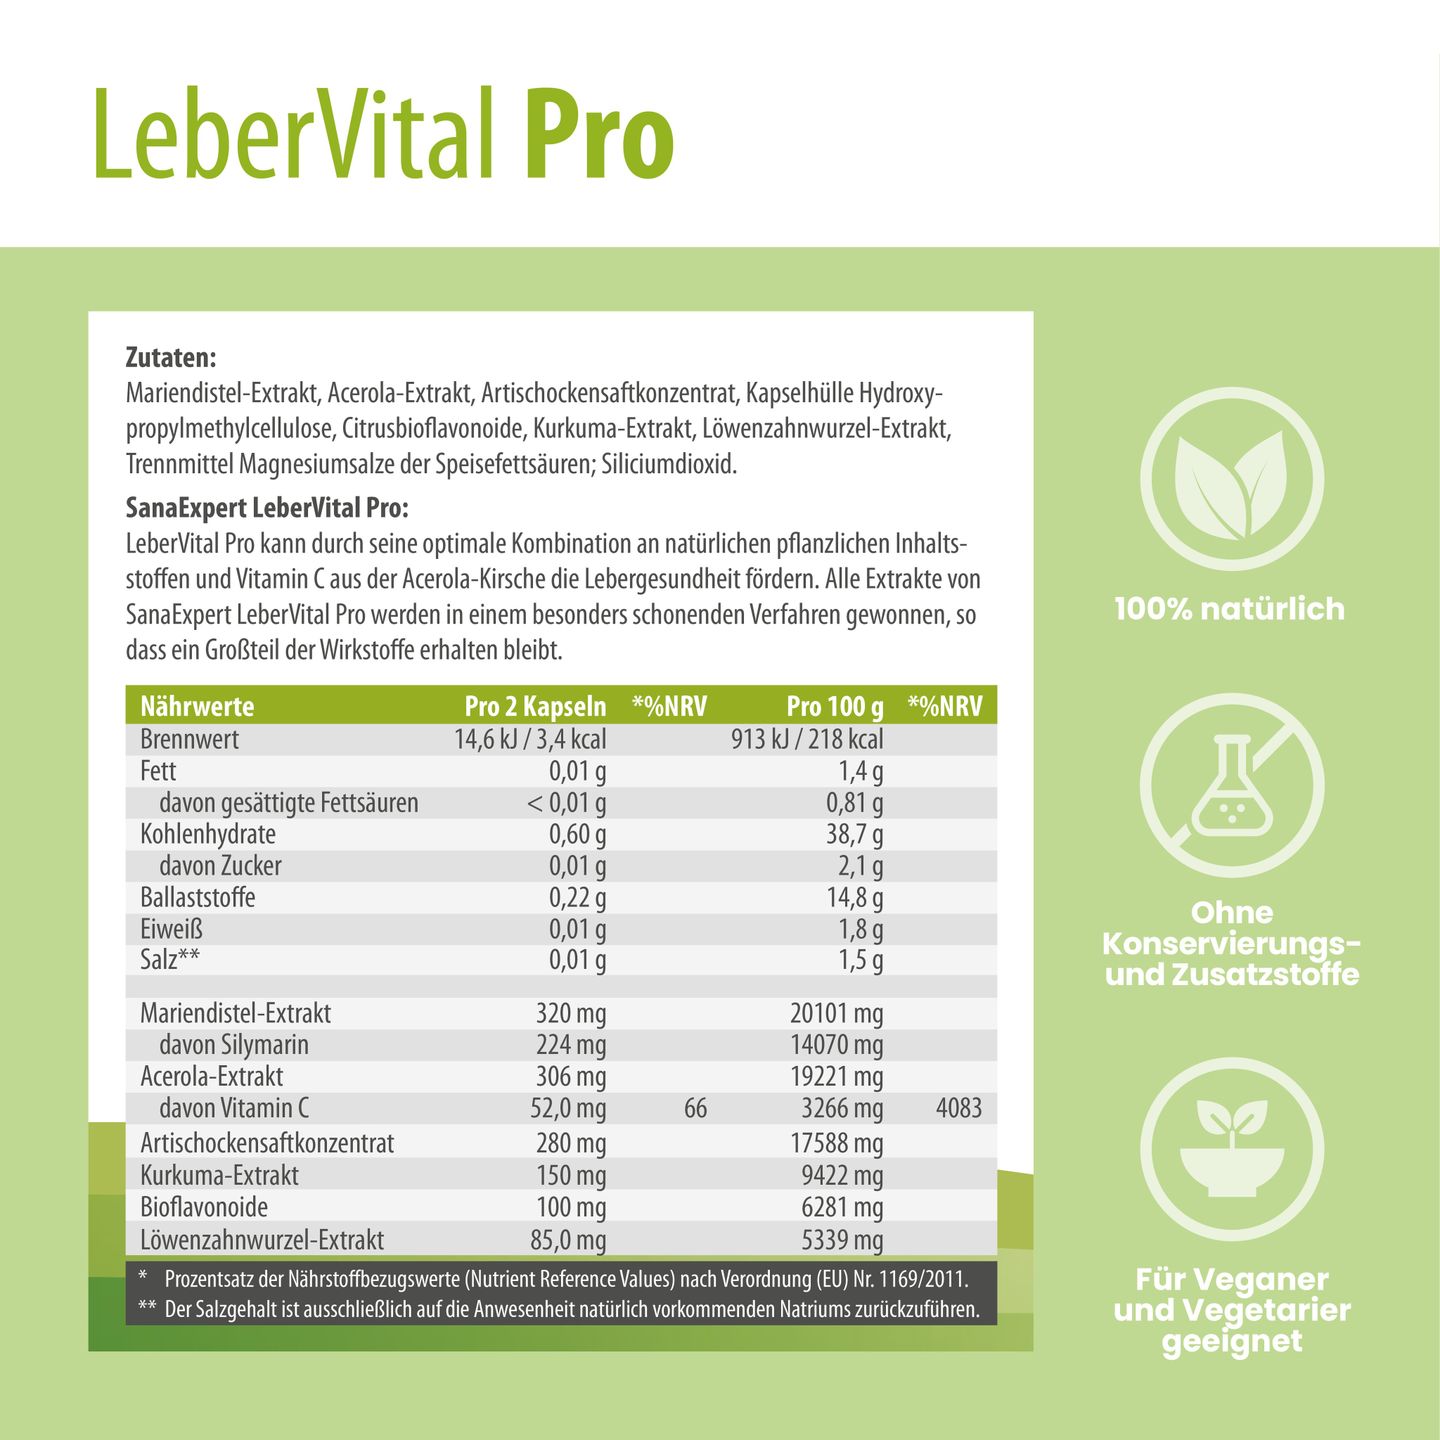 Detaillierte Nährwert- und Zutateninformationen auf LeberVital Pro Verpackung, betont natürliche Inhaltsstoffe und Eignung für Veganer und Vegetarier.